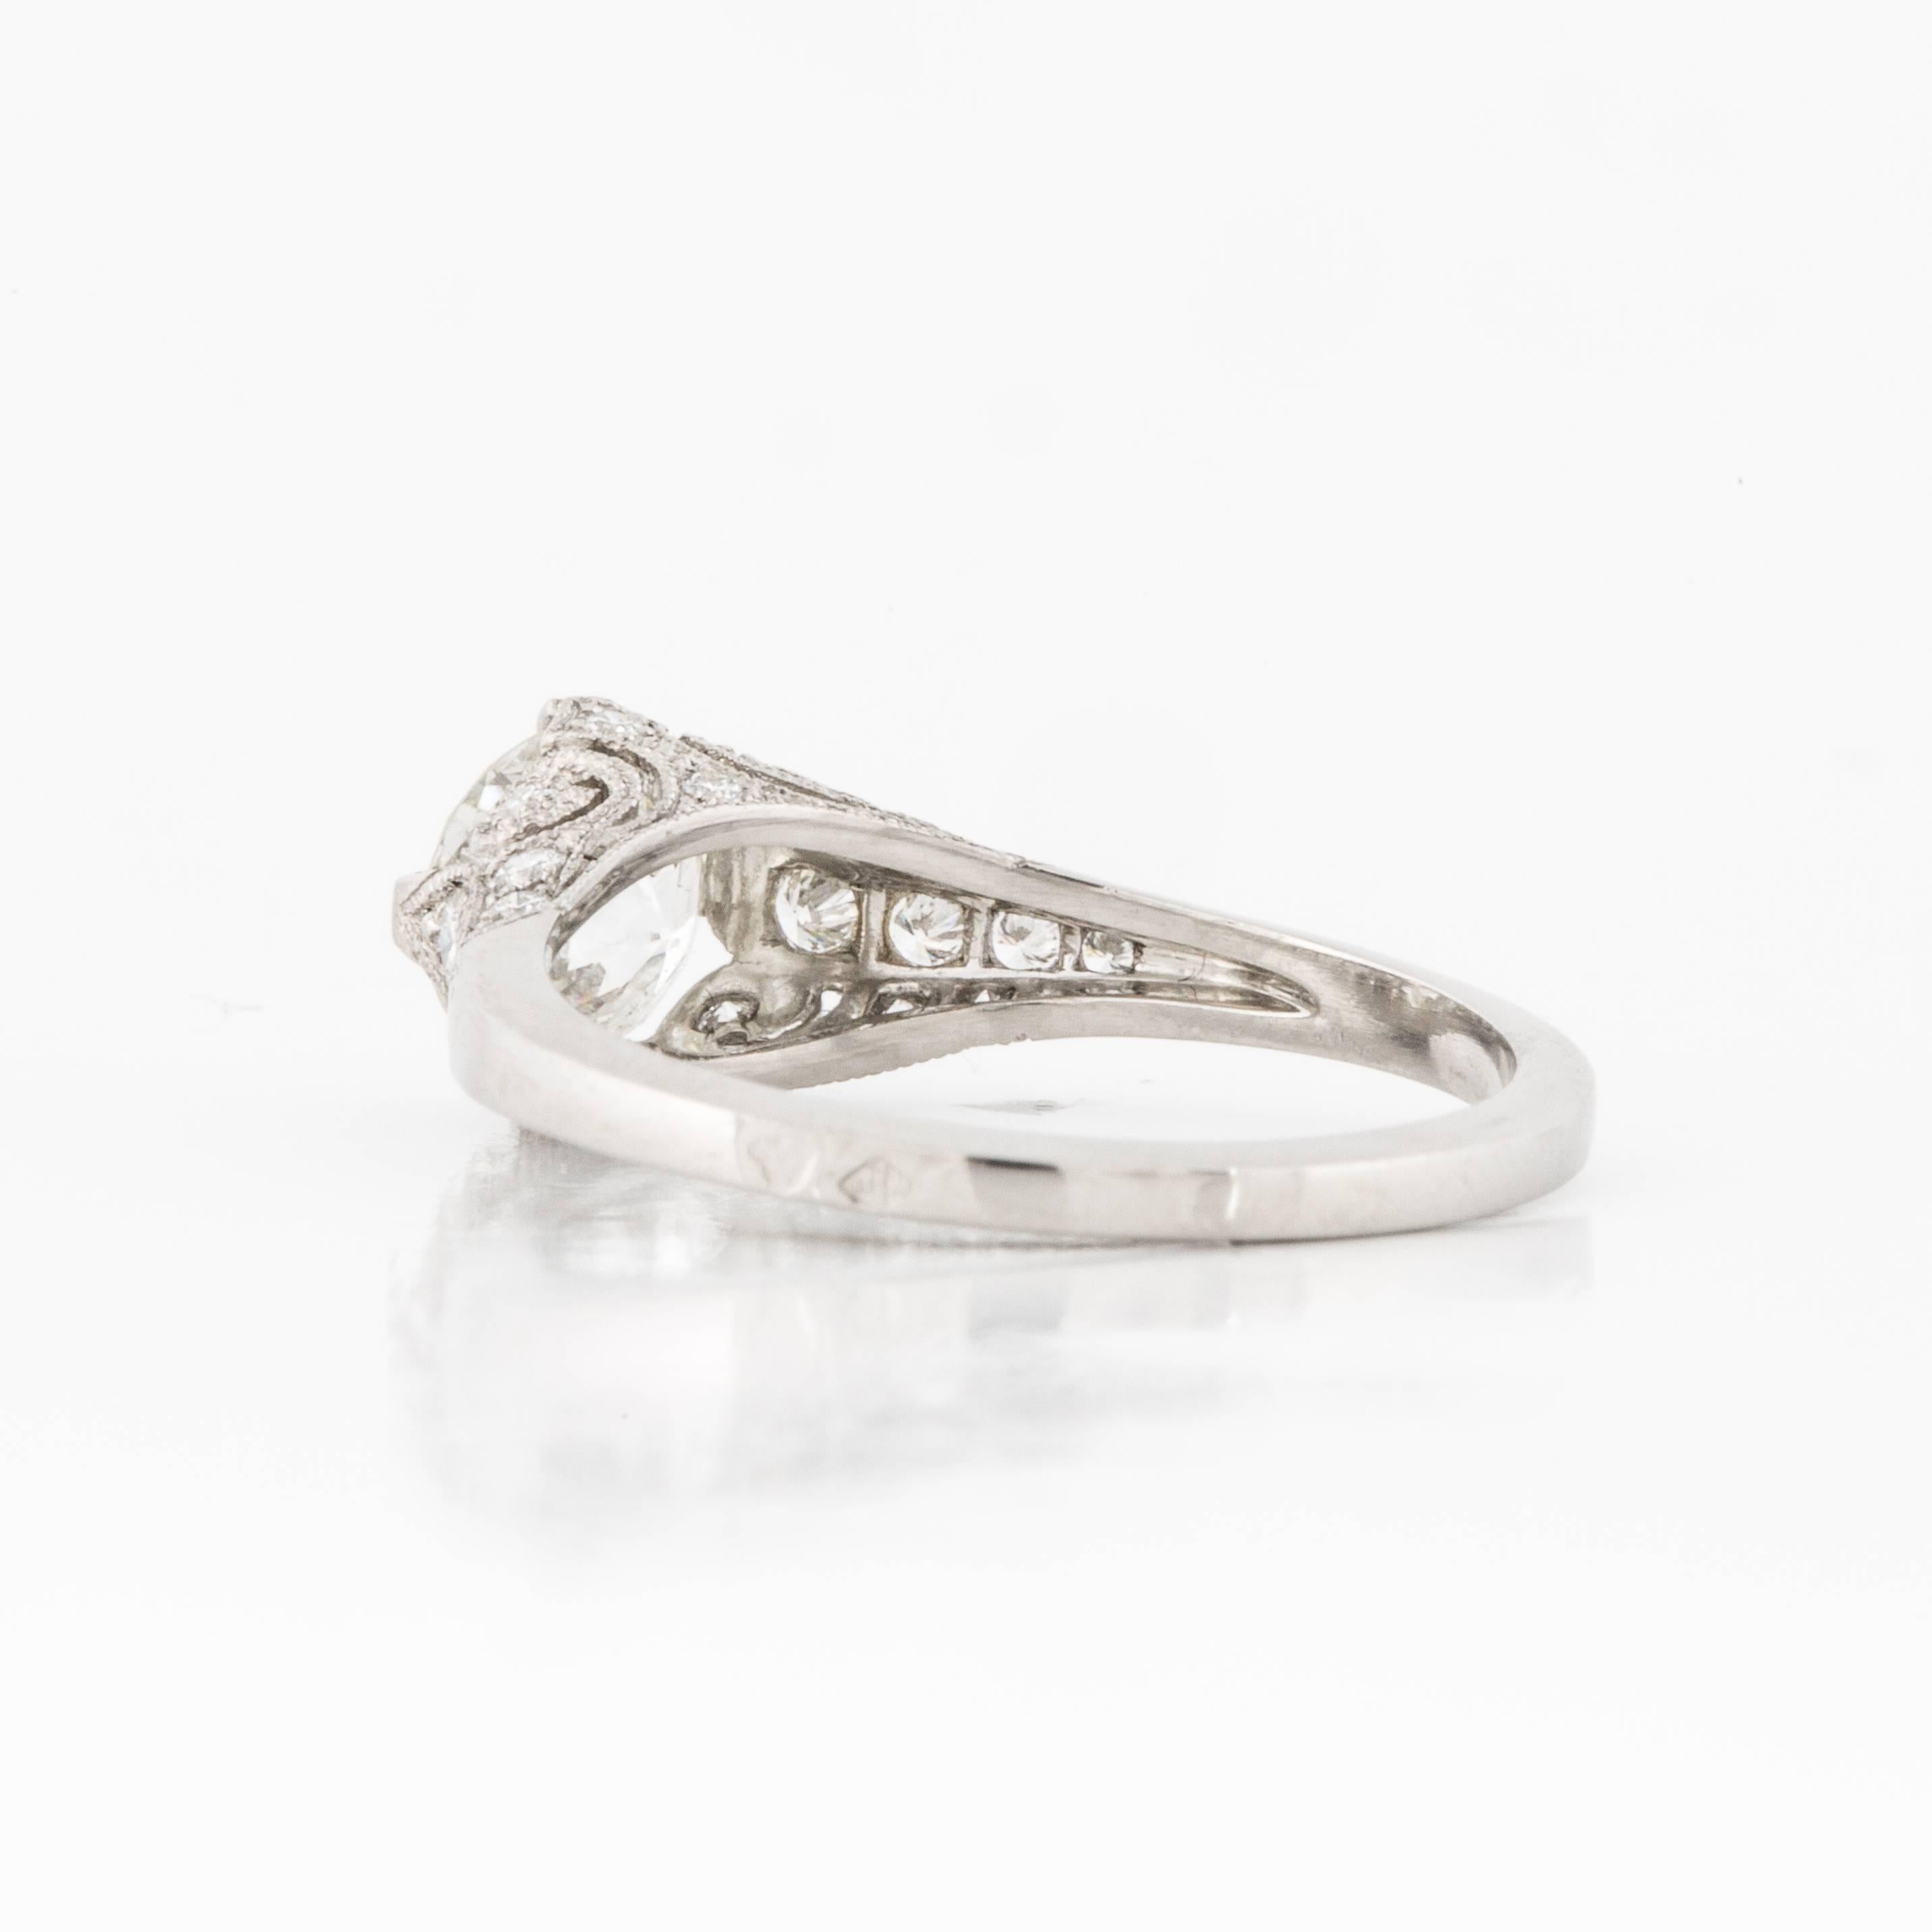 Old European Cut GIA Certified 0.98 Carat Diamond Engagement Ring in Platinum